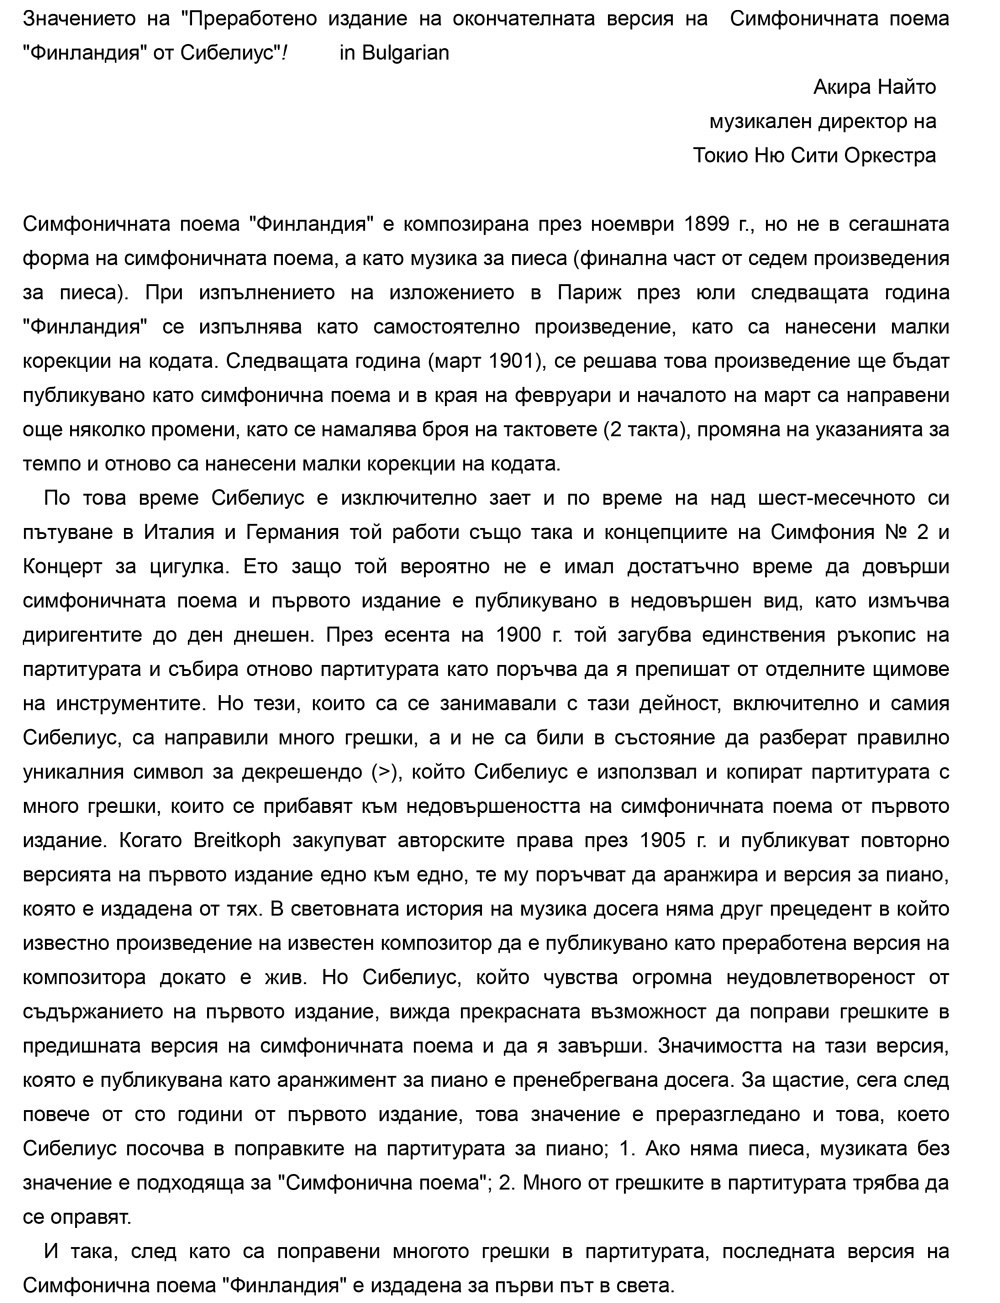 Sibeliusの最終稿に基ずくFinlandia最新版について_Bulgarian